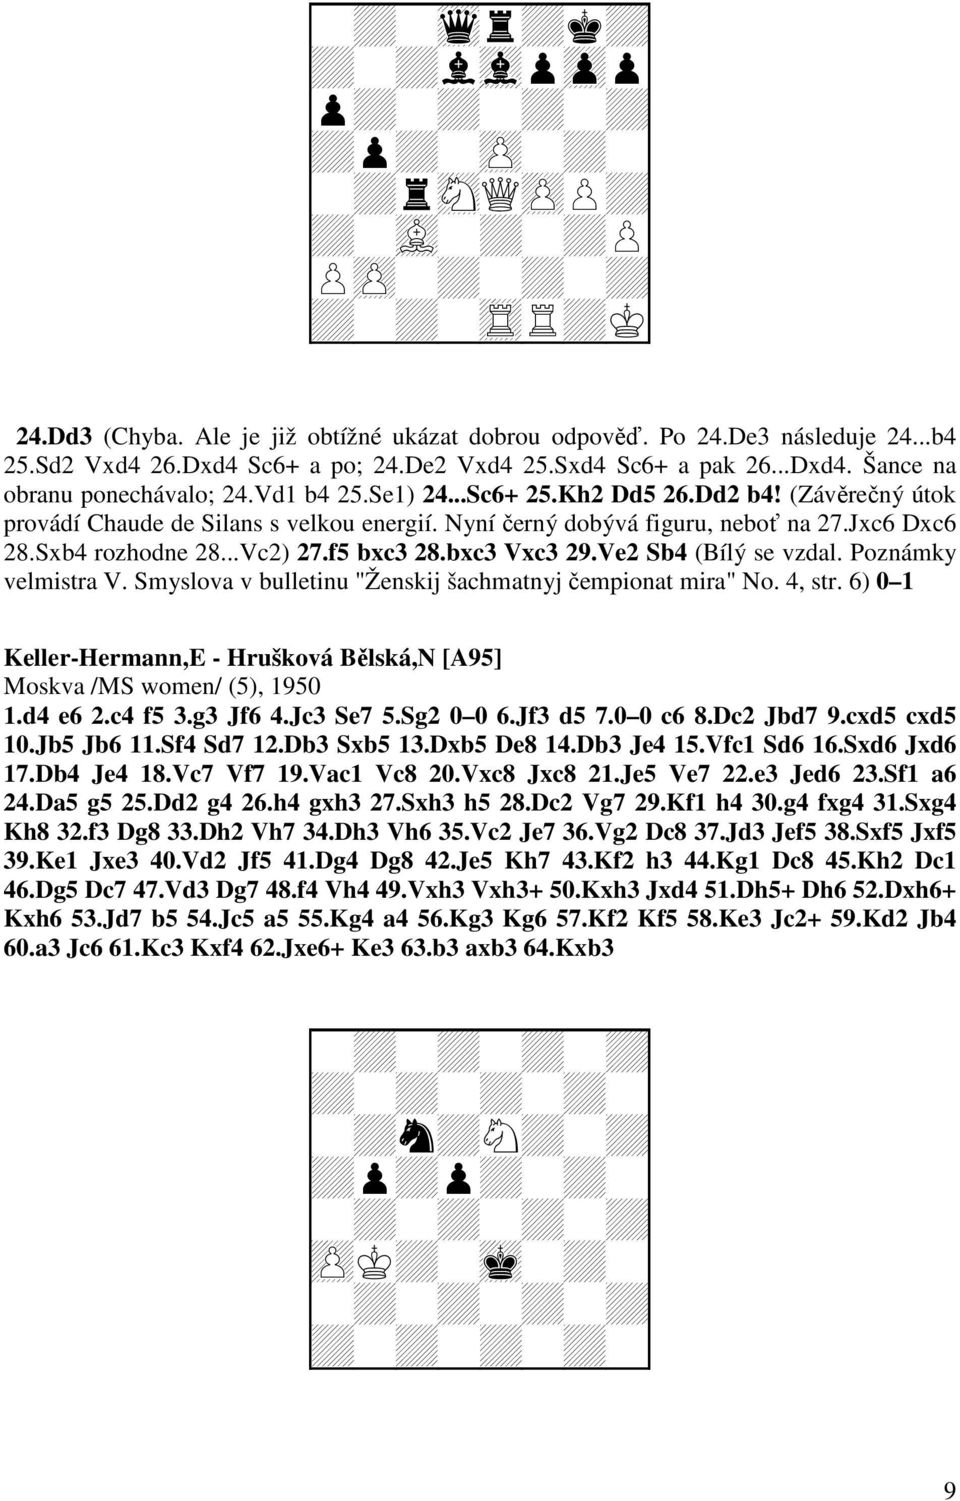 Sxb4 rozhodne 28...Vc2) 27.f5 bxc3 28.bxc3 Vxc3 29.Ve2 Sb4 (Bílý se vzdal. Poznámky velmistra V. Smyslova v bulletinu "Ženskij šachmatnyj čempionat mira" No. 4, str.